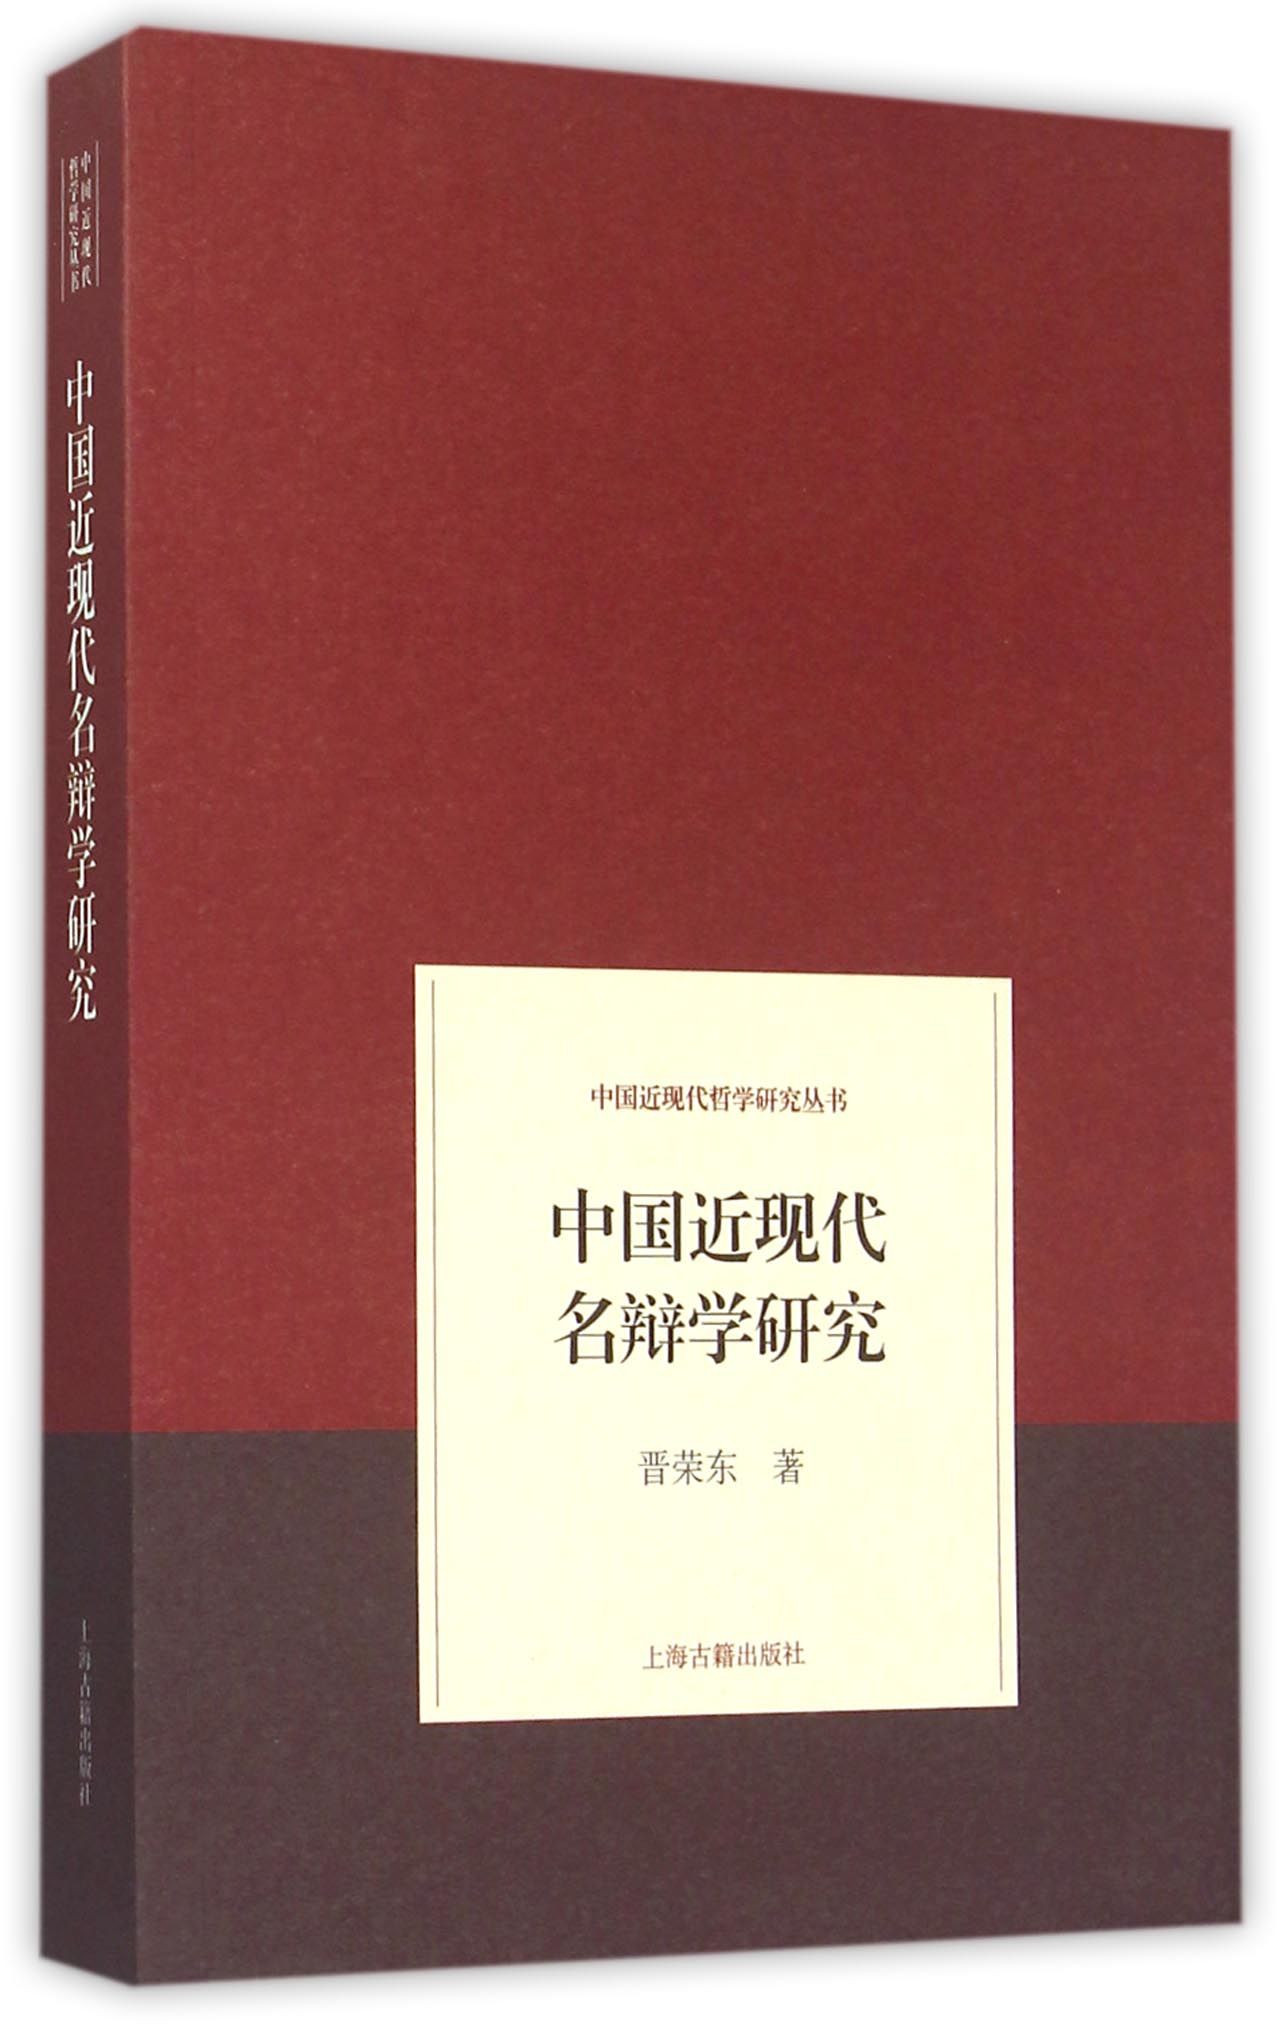 中国近现代名辩学研究/中国近现代哲学研究丛书